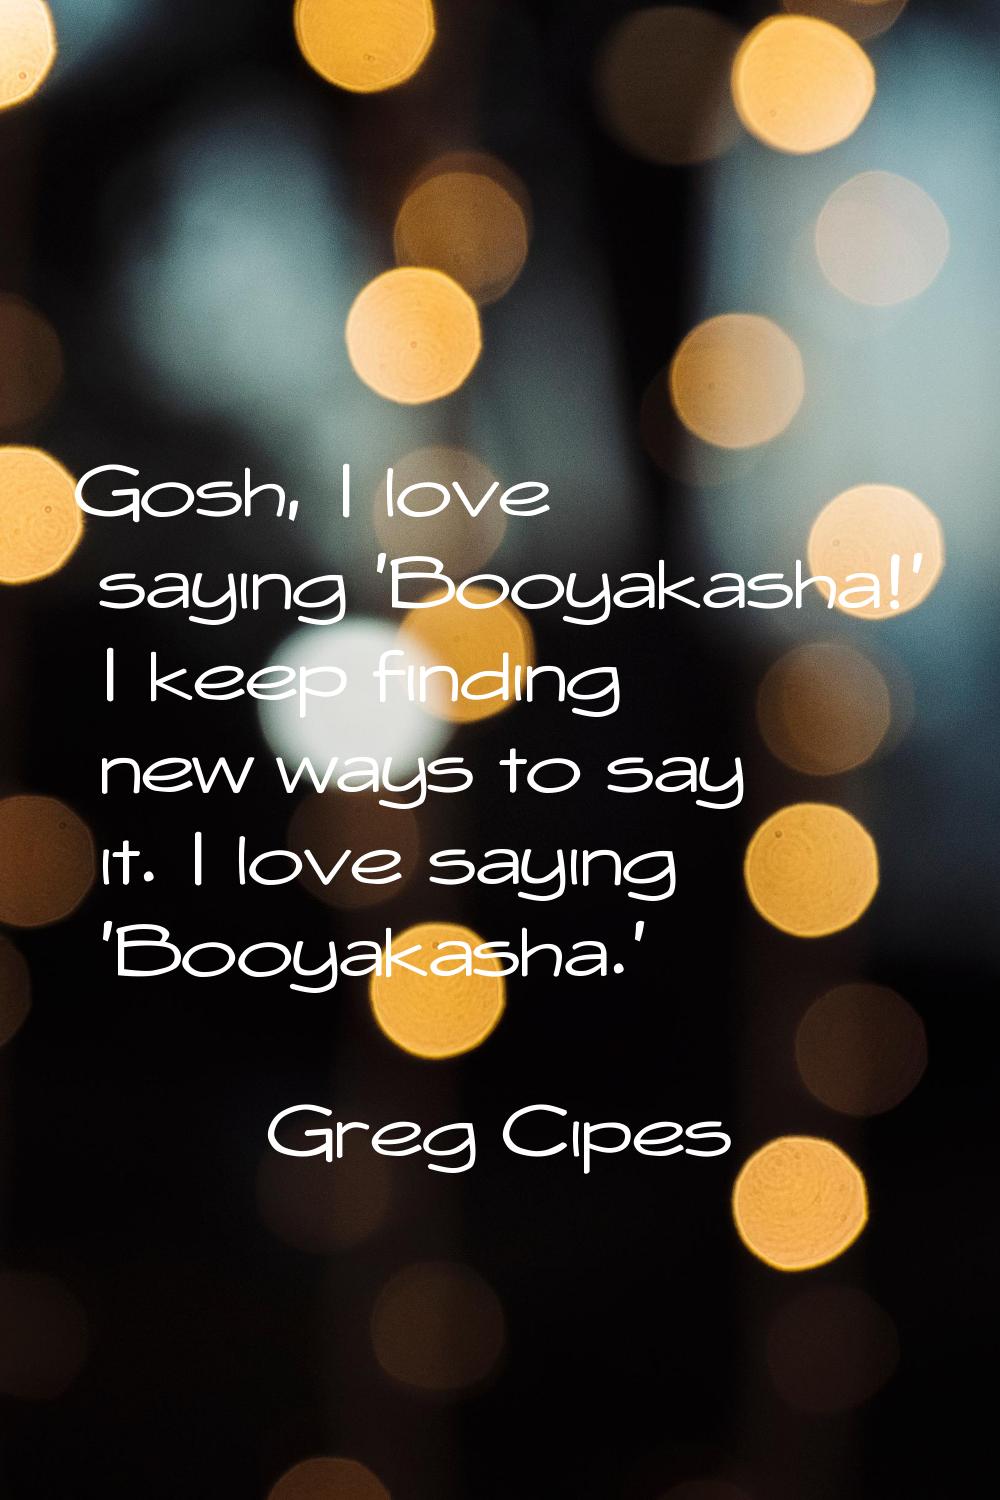 Gosh, I love saying 'Booyakasha!' I keep finding new ways to say it. I love saying 'Booyakasha.'